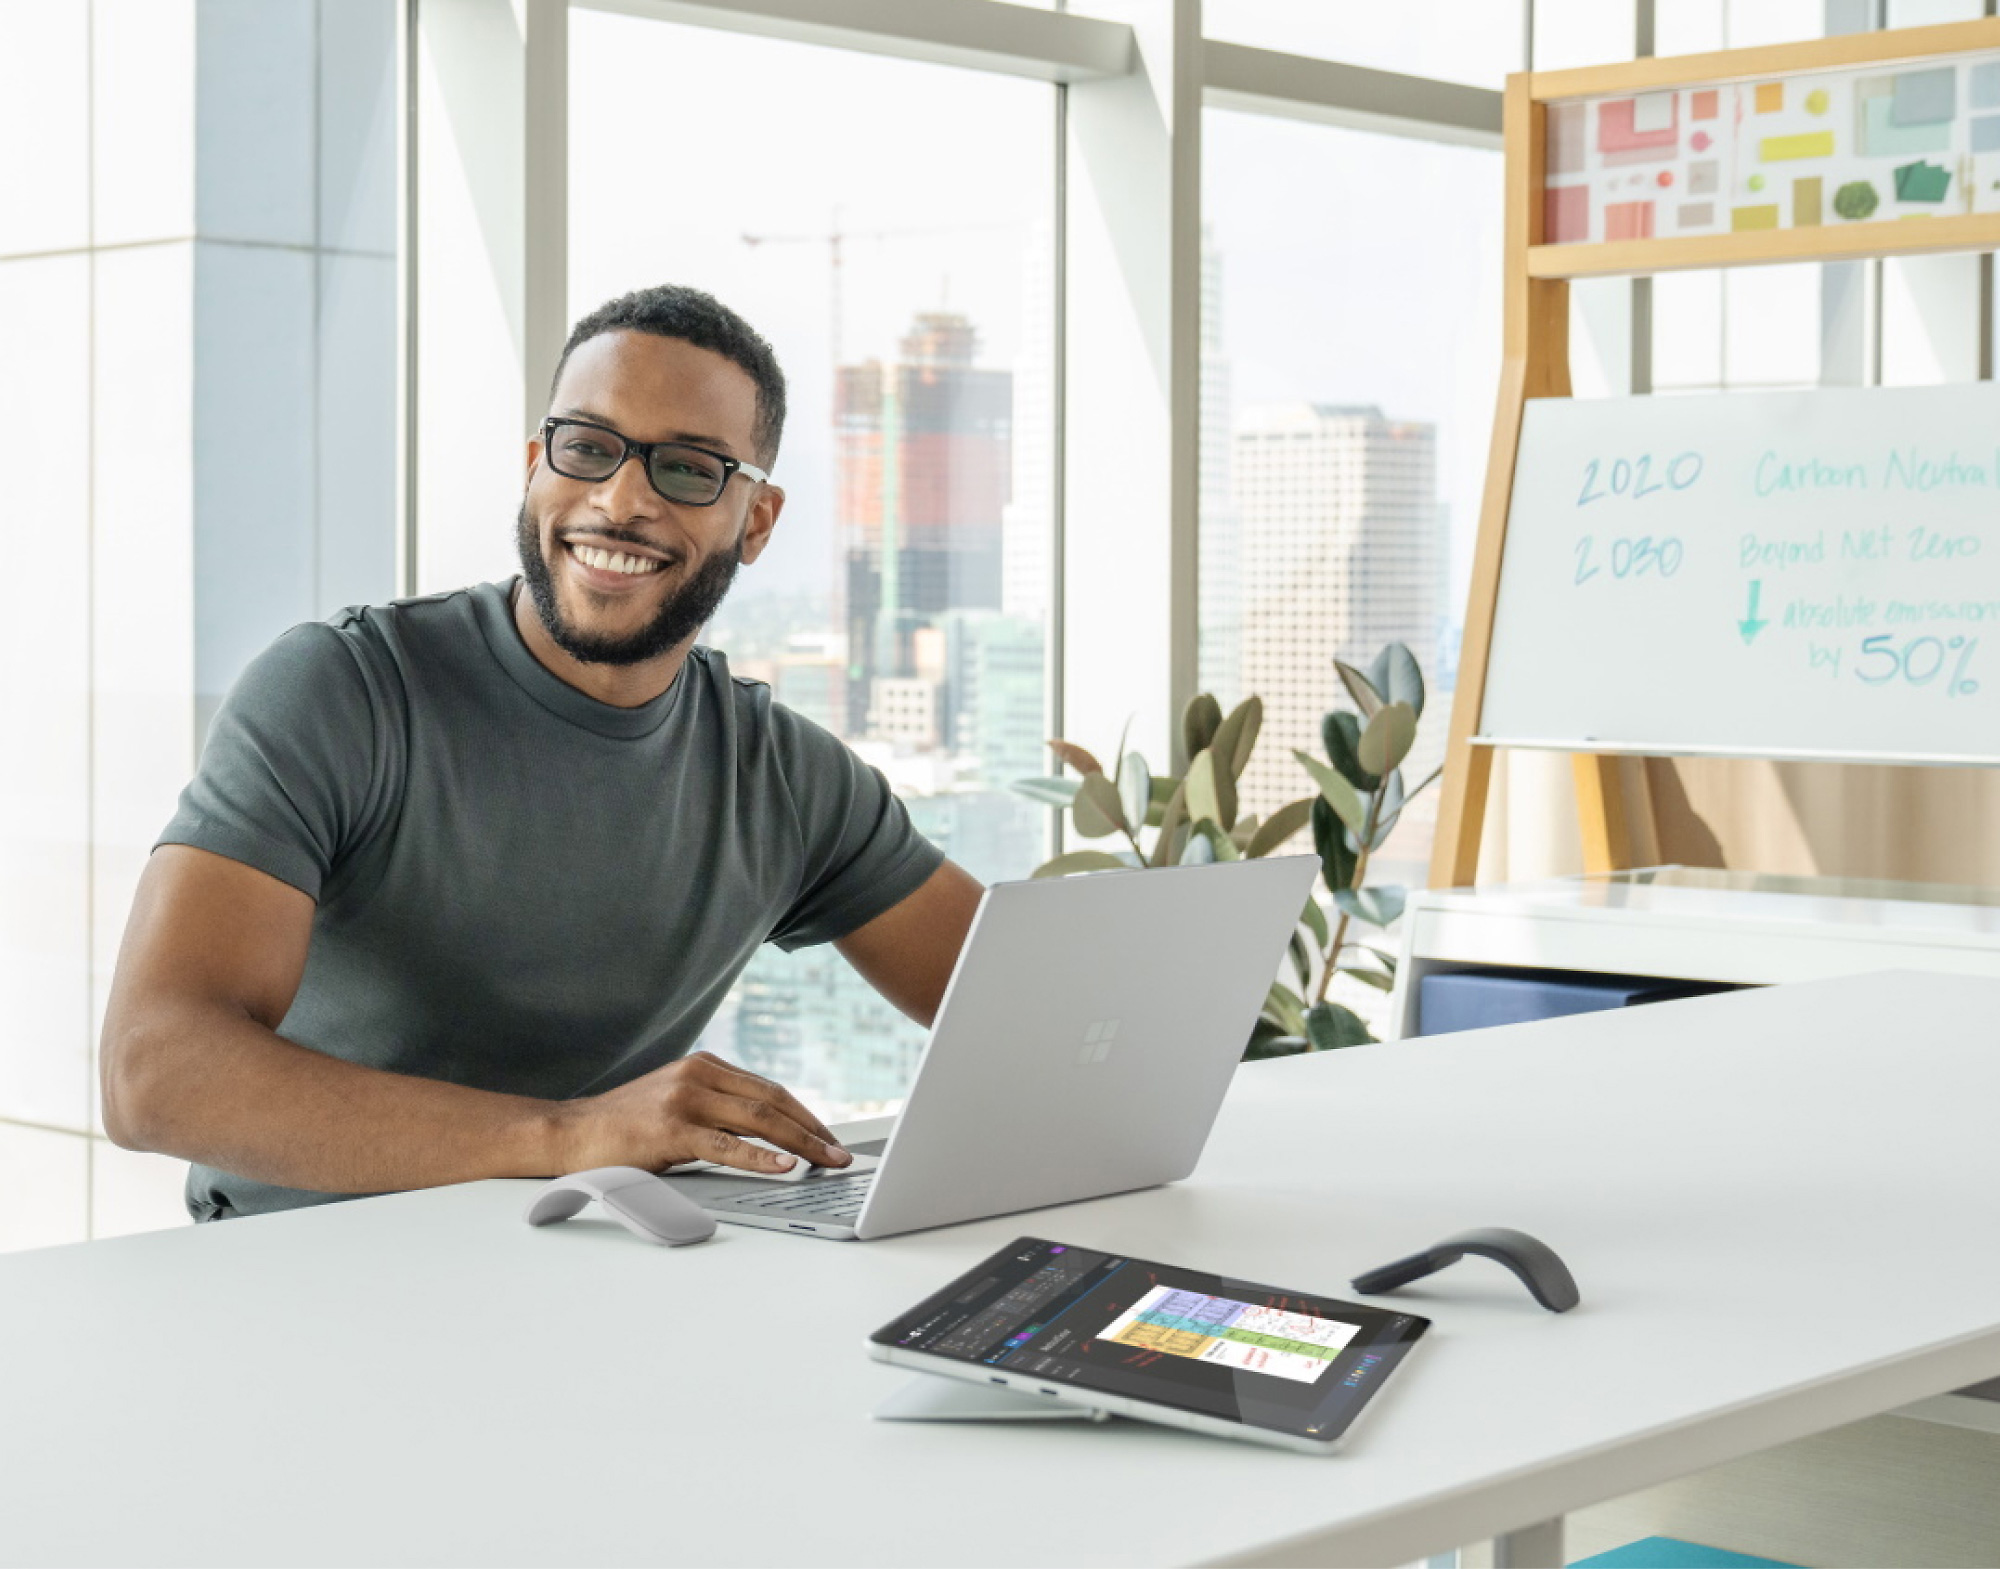 タブレット、電話、プレゼンテーション ボードを備えた最新のオフィス デスクでノート PC を使用している眼鏡をかけて微笑んでいる男性